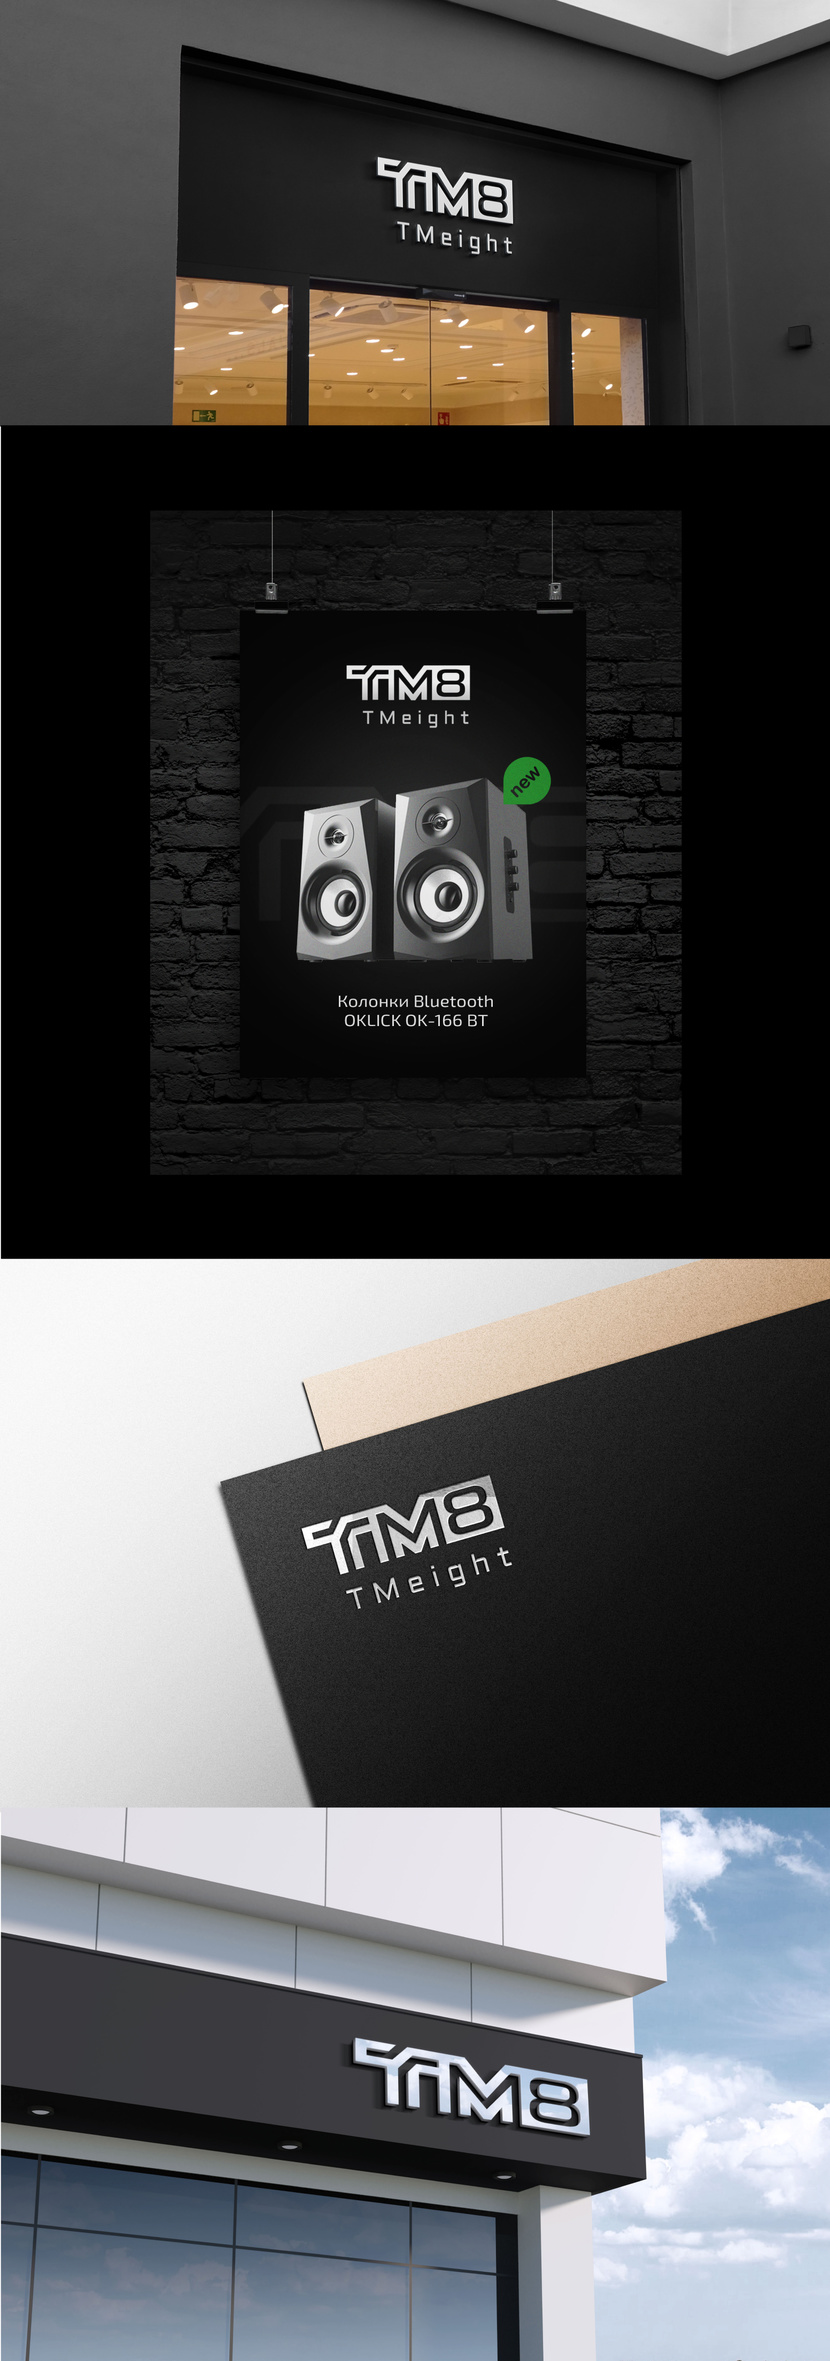 TM8 - Логотип интернет-магазина TM8